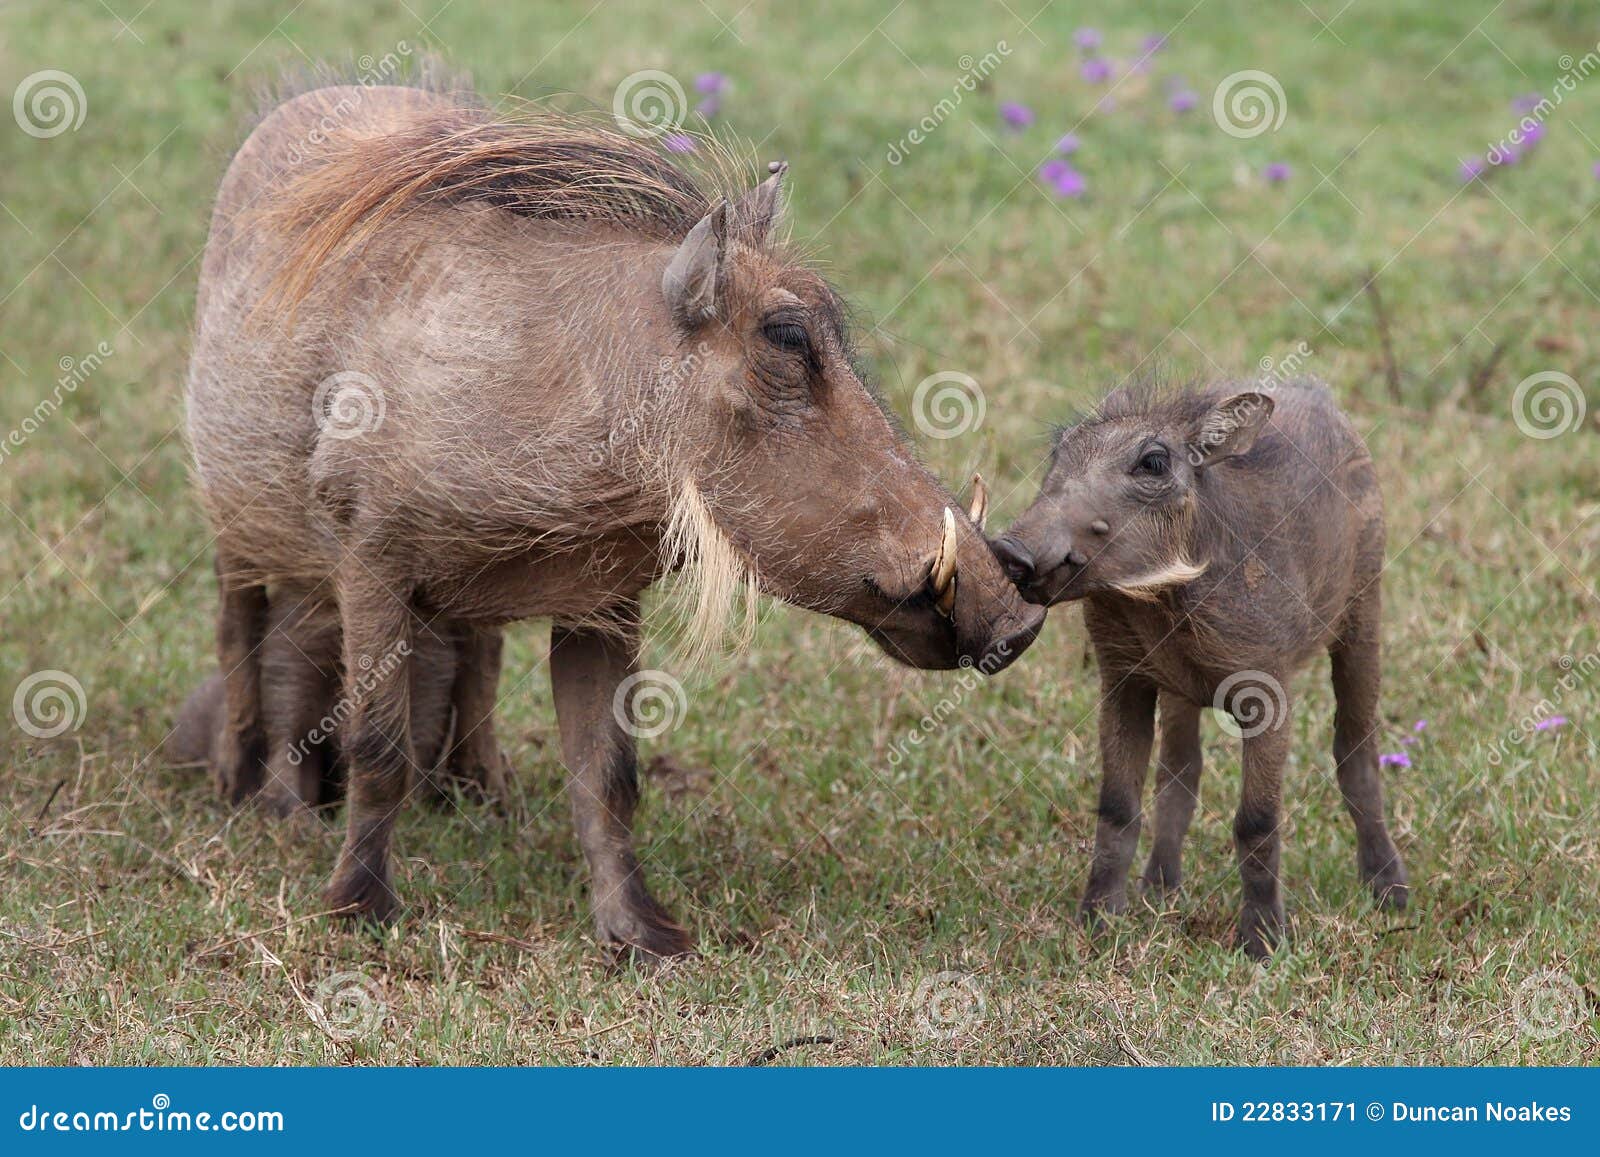 warthog kiss